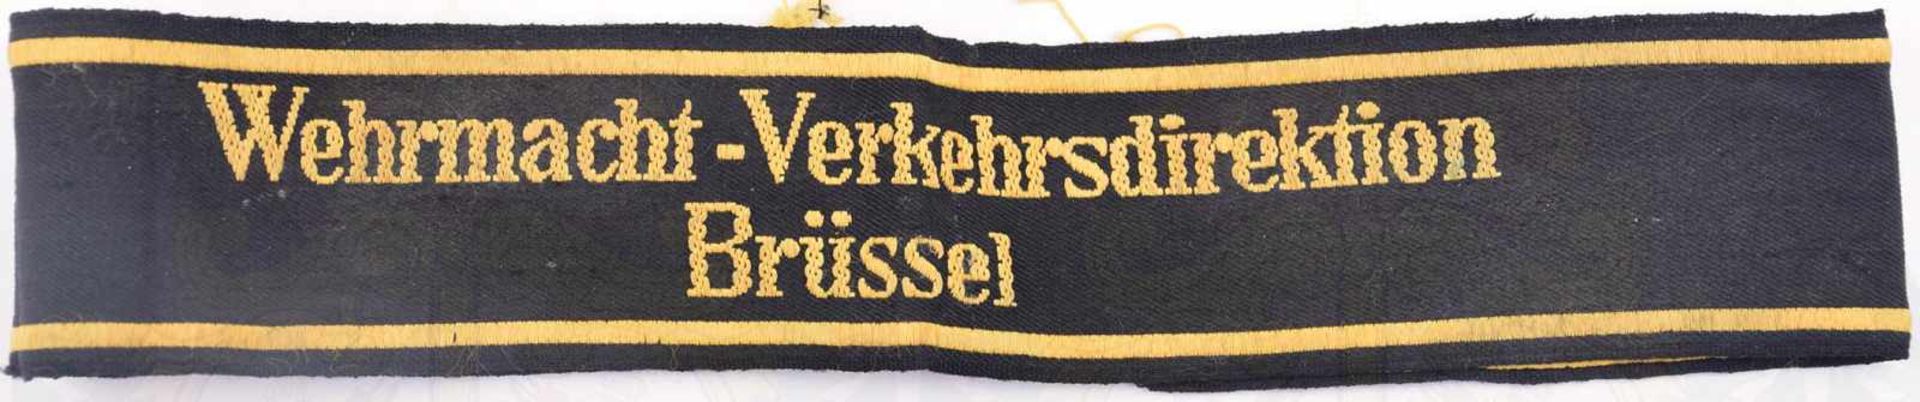 ÄRMELBAND WEHRMACHT-VERKEHRSDIREKTION BRÜSSEL, gewebt, gelb/schwarz, L. 43cm, ungetragen, um 1940